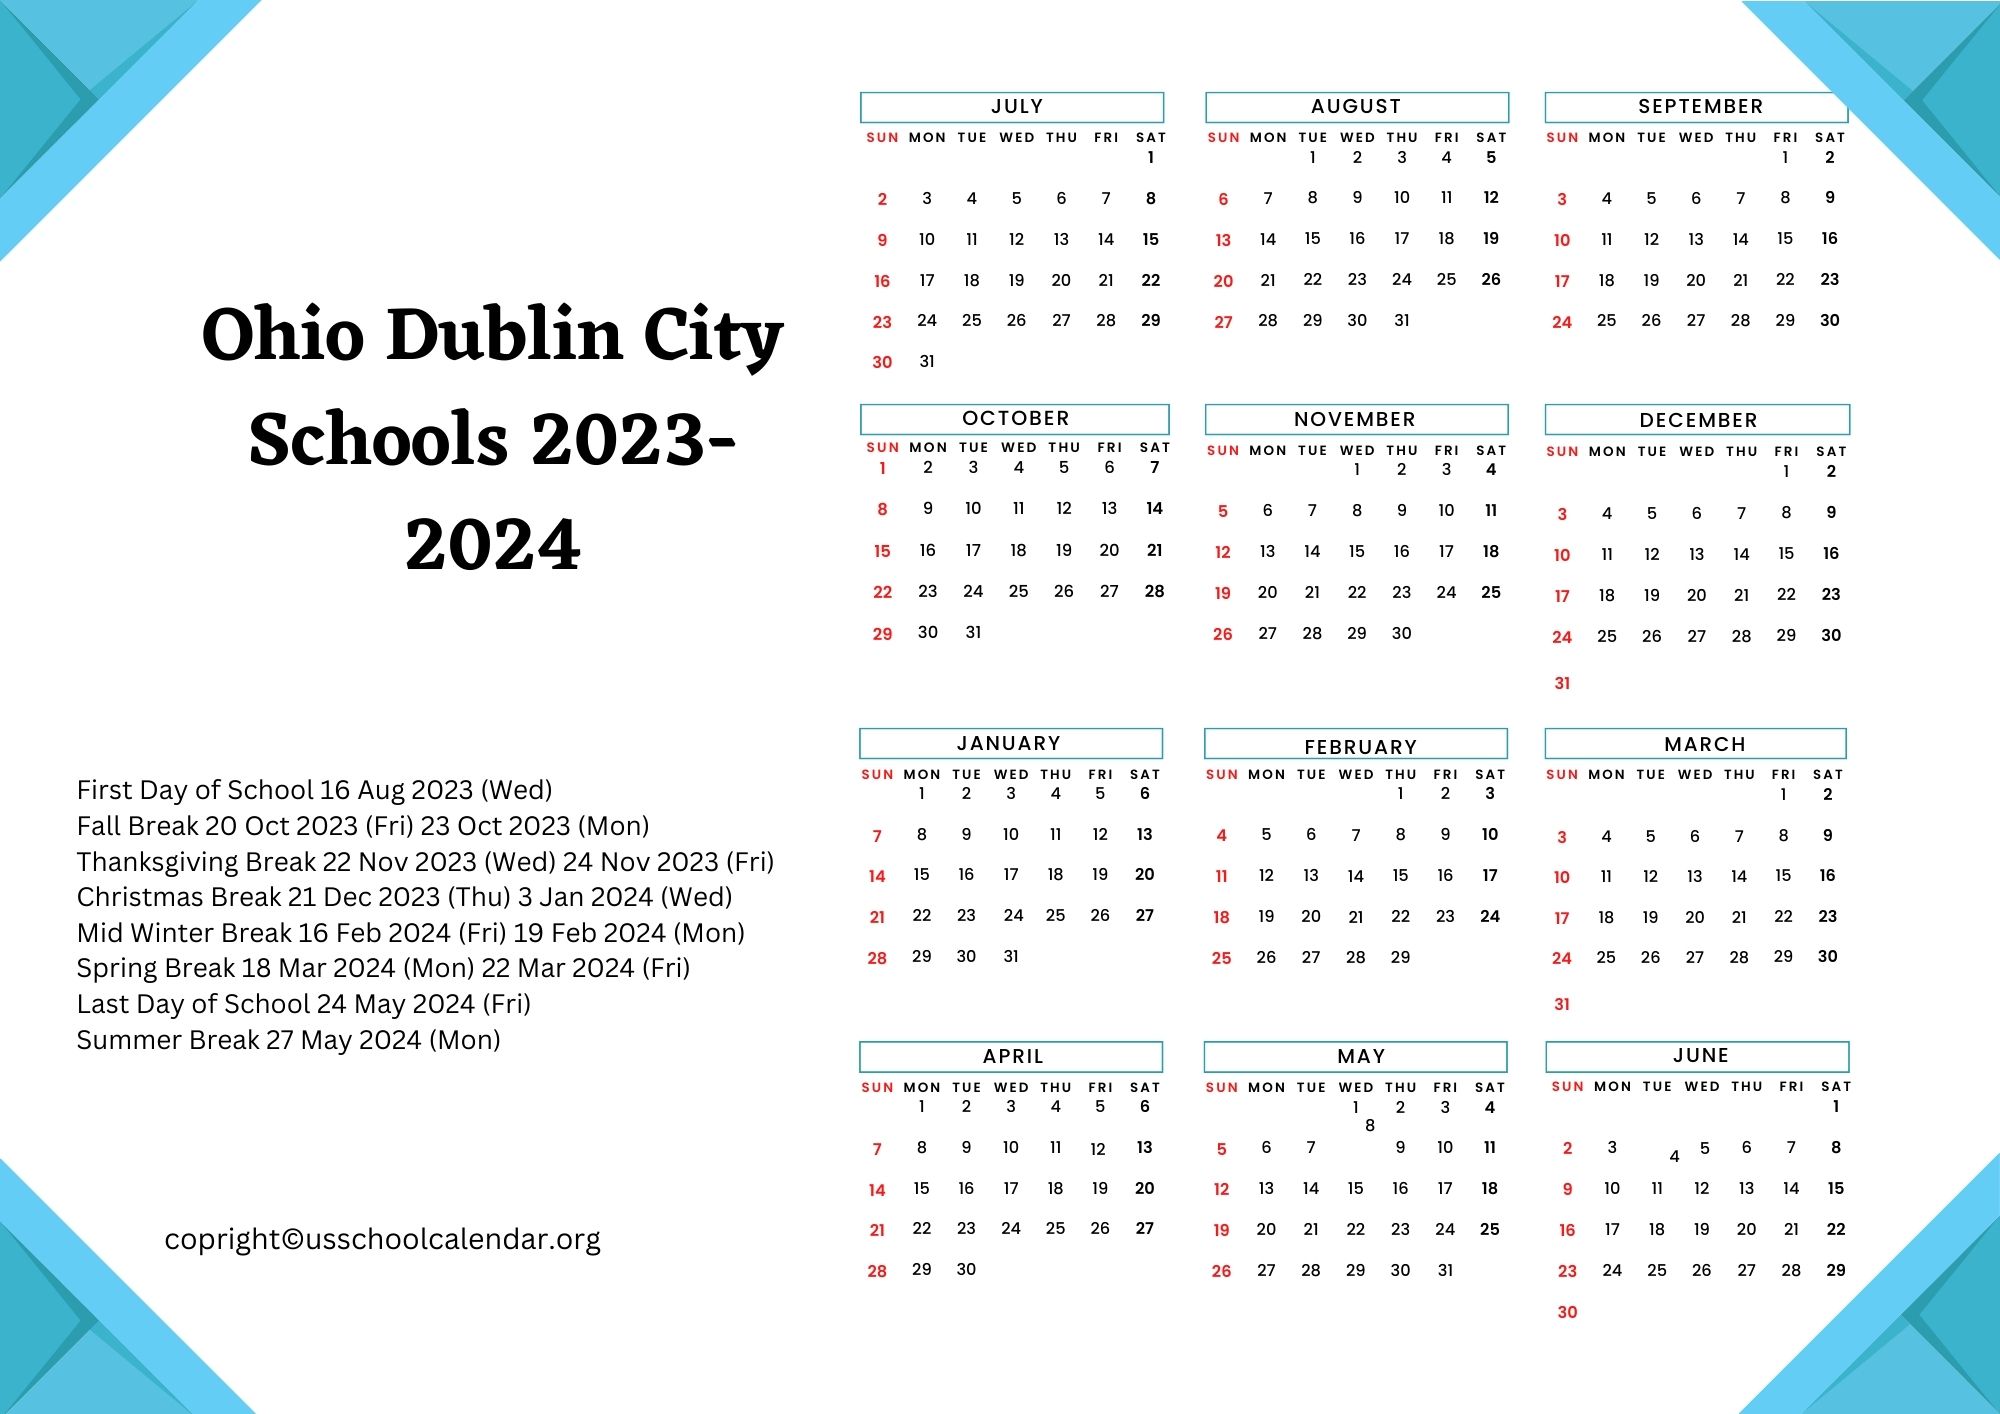 Ohio Dublin City Schools Calendar with Holidays 2023 2024